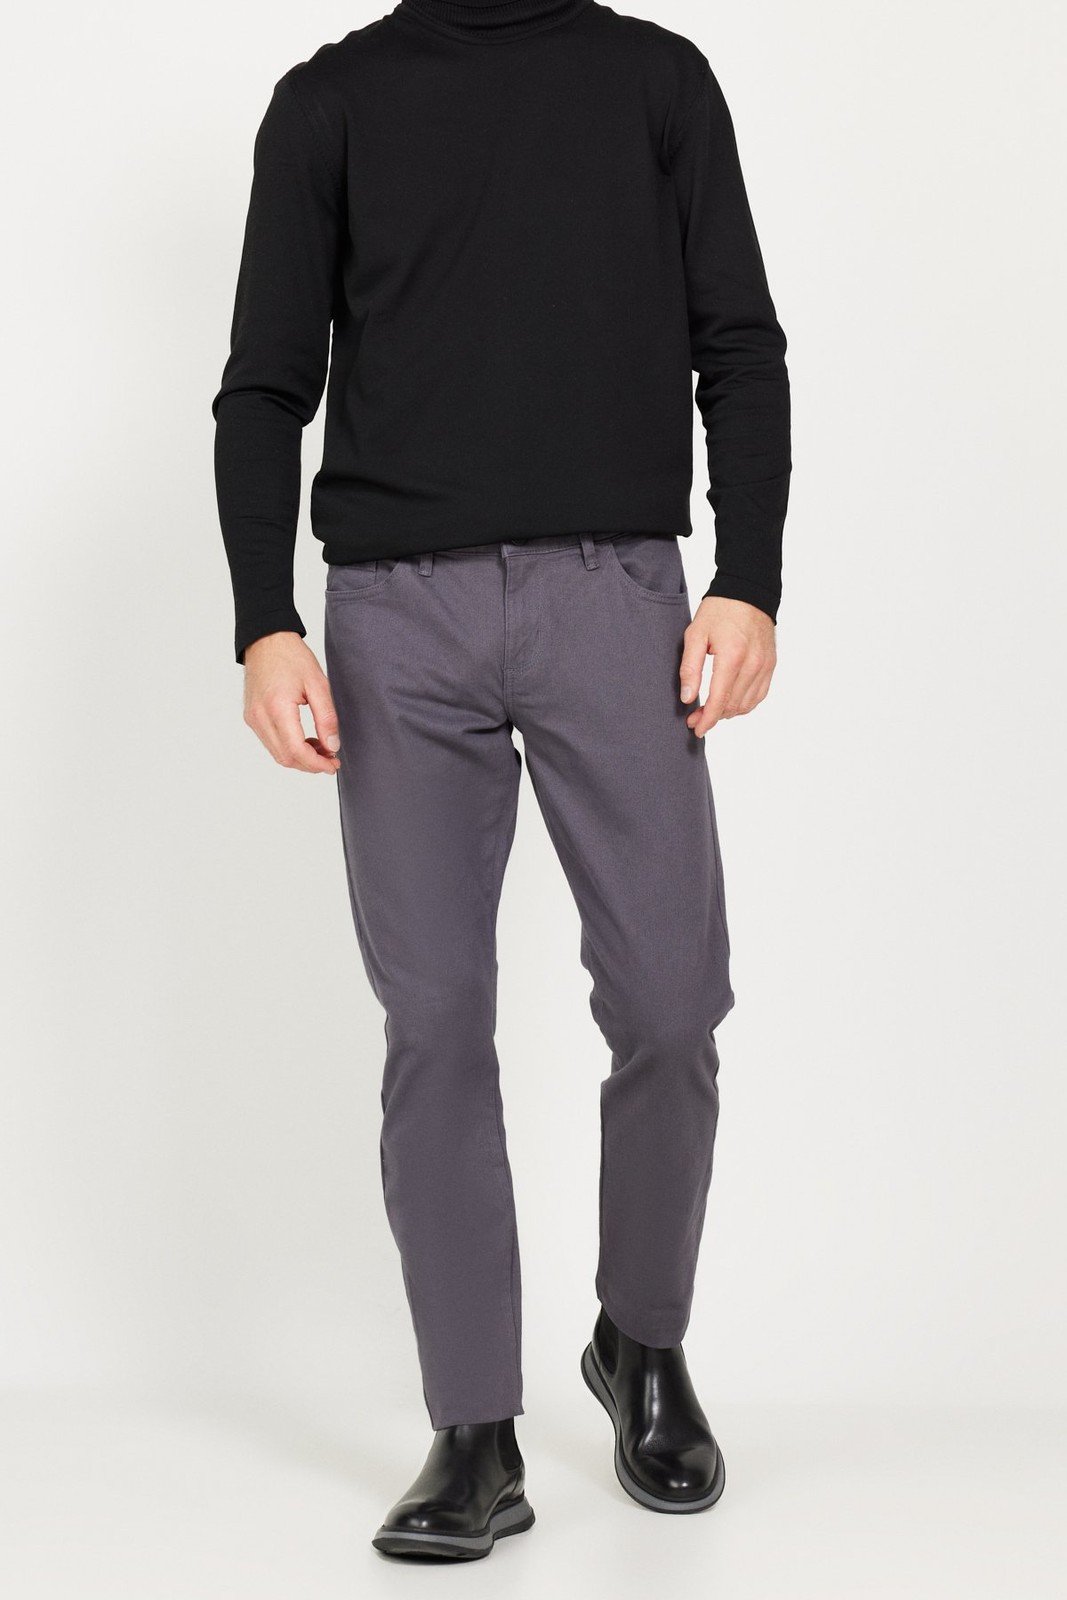 ALTINYILDIZ CLASSICS Men's Anthracite Slim Fit Slim Fit 5 Pocket Cotton Flexible Trousers